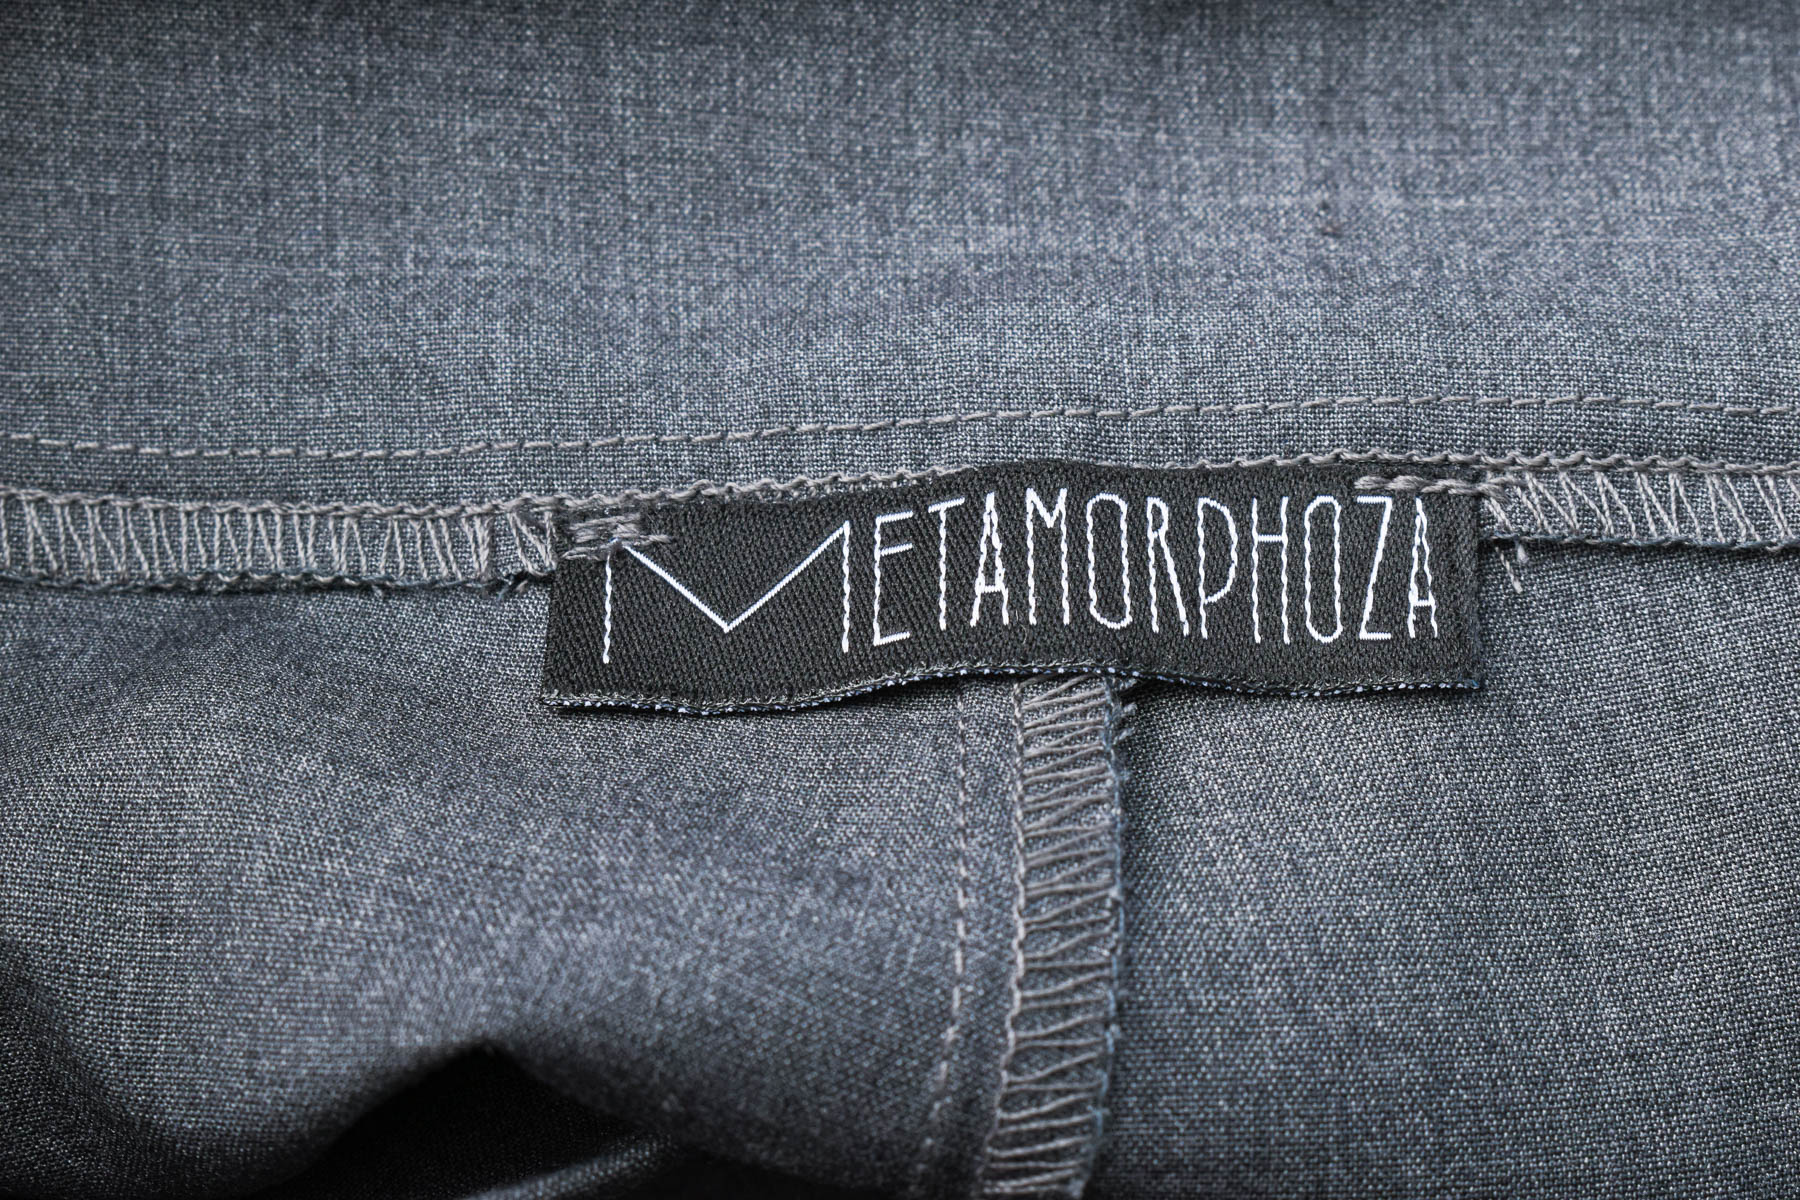 Γυναικεία παντελόνια - METAMORPHOZA - 2